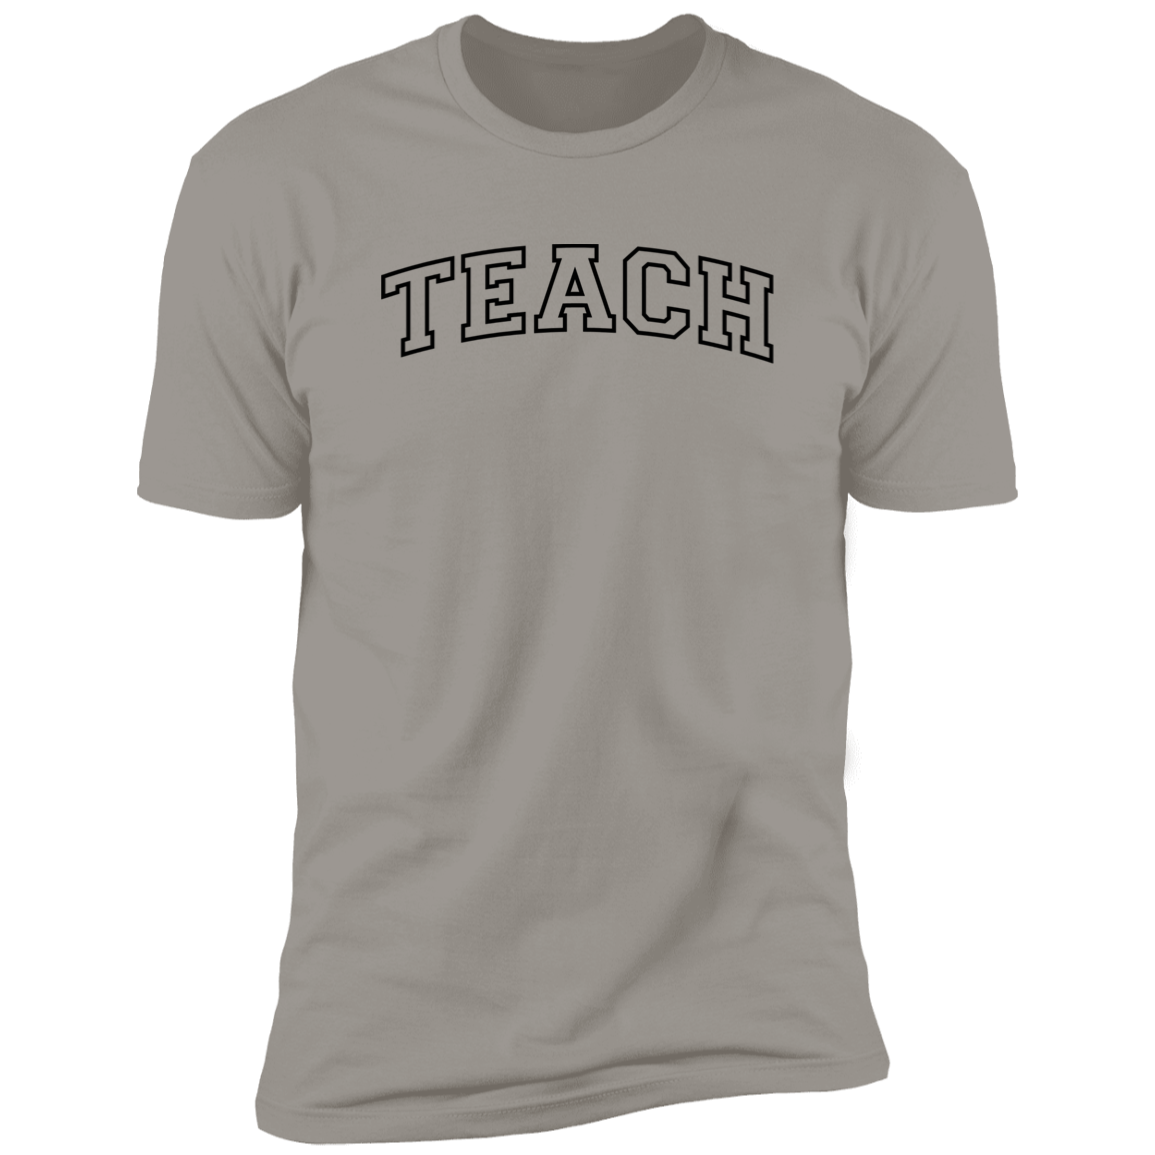 The Most Inspiring "Teach" T-Shirt/Sweatshirt